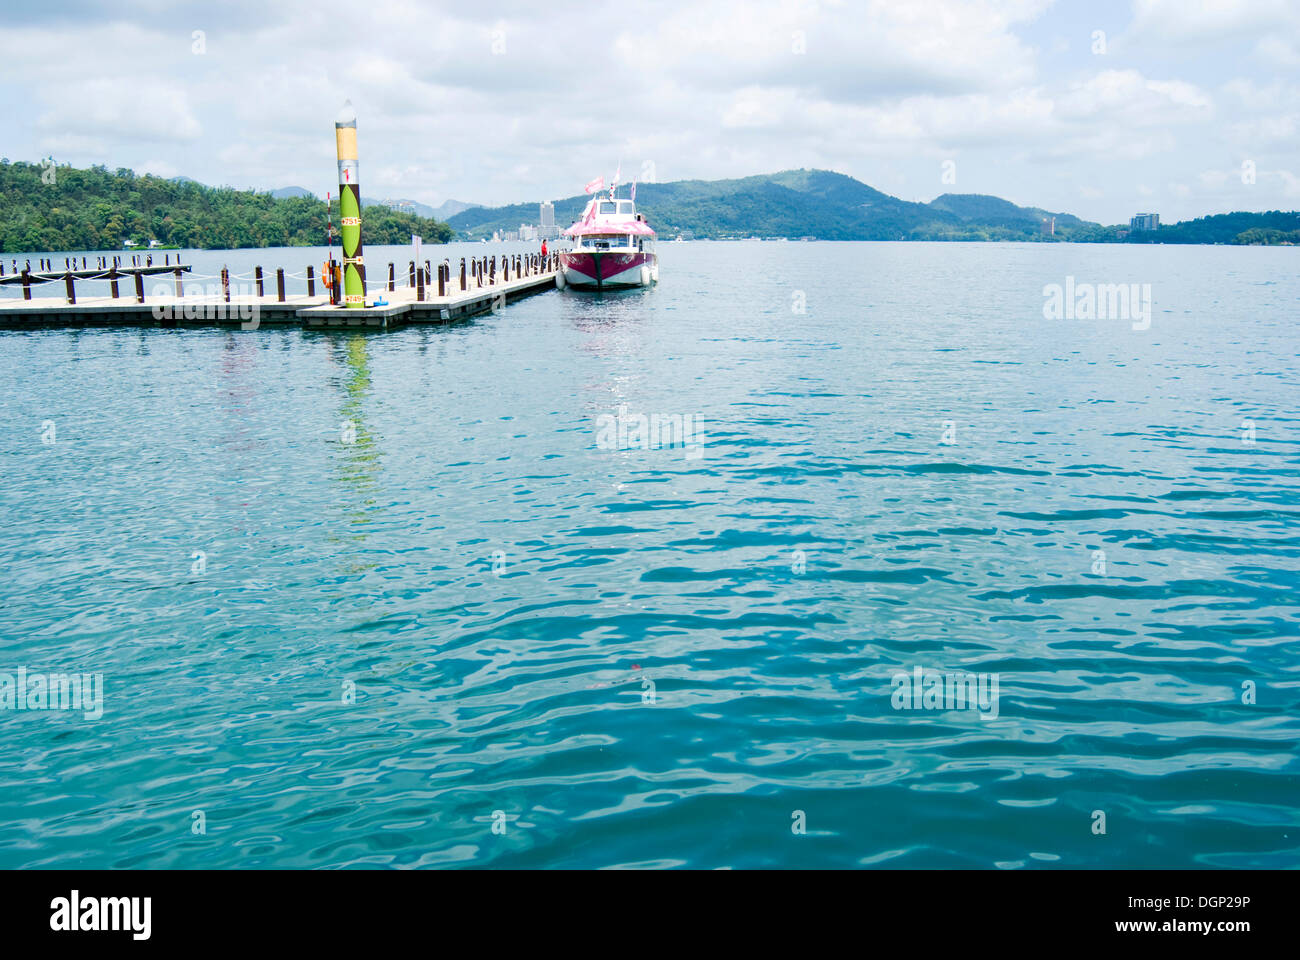 Bateau amarré sur le lac, Sun Moon Lake, Taiwan, l'Asie Banque D'Images